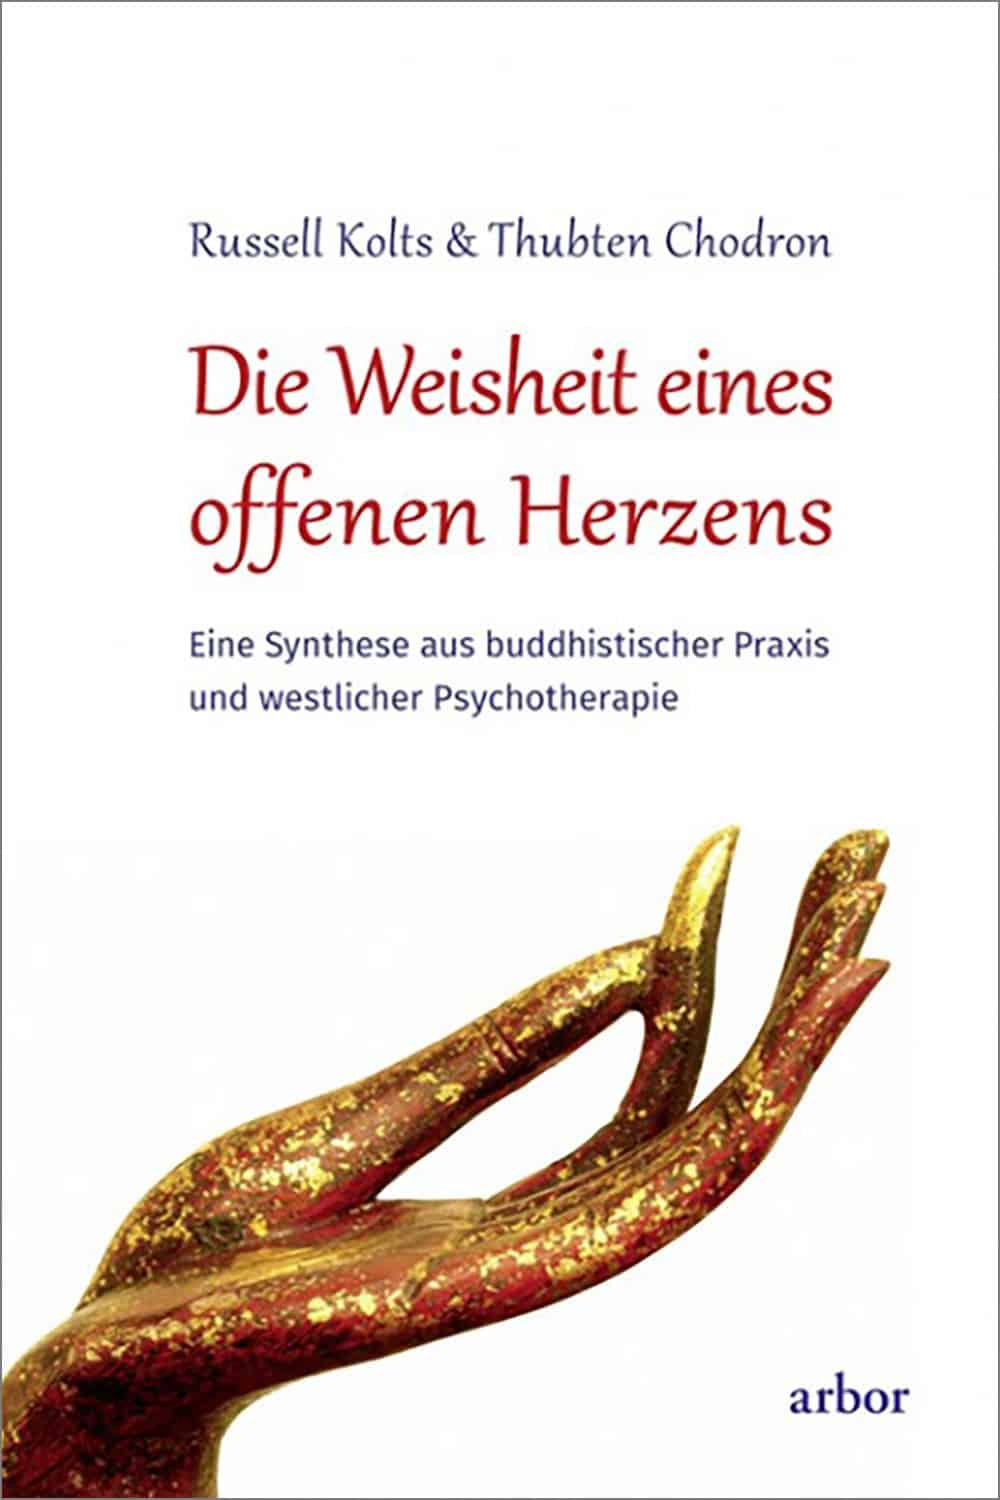 Okładka książki An Open Hearted Life w języku niemieckim